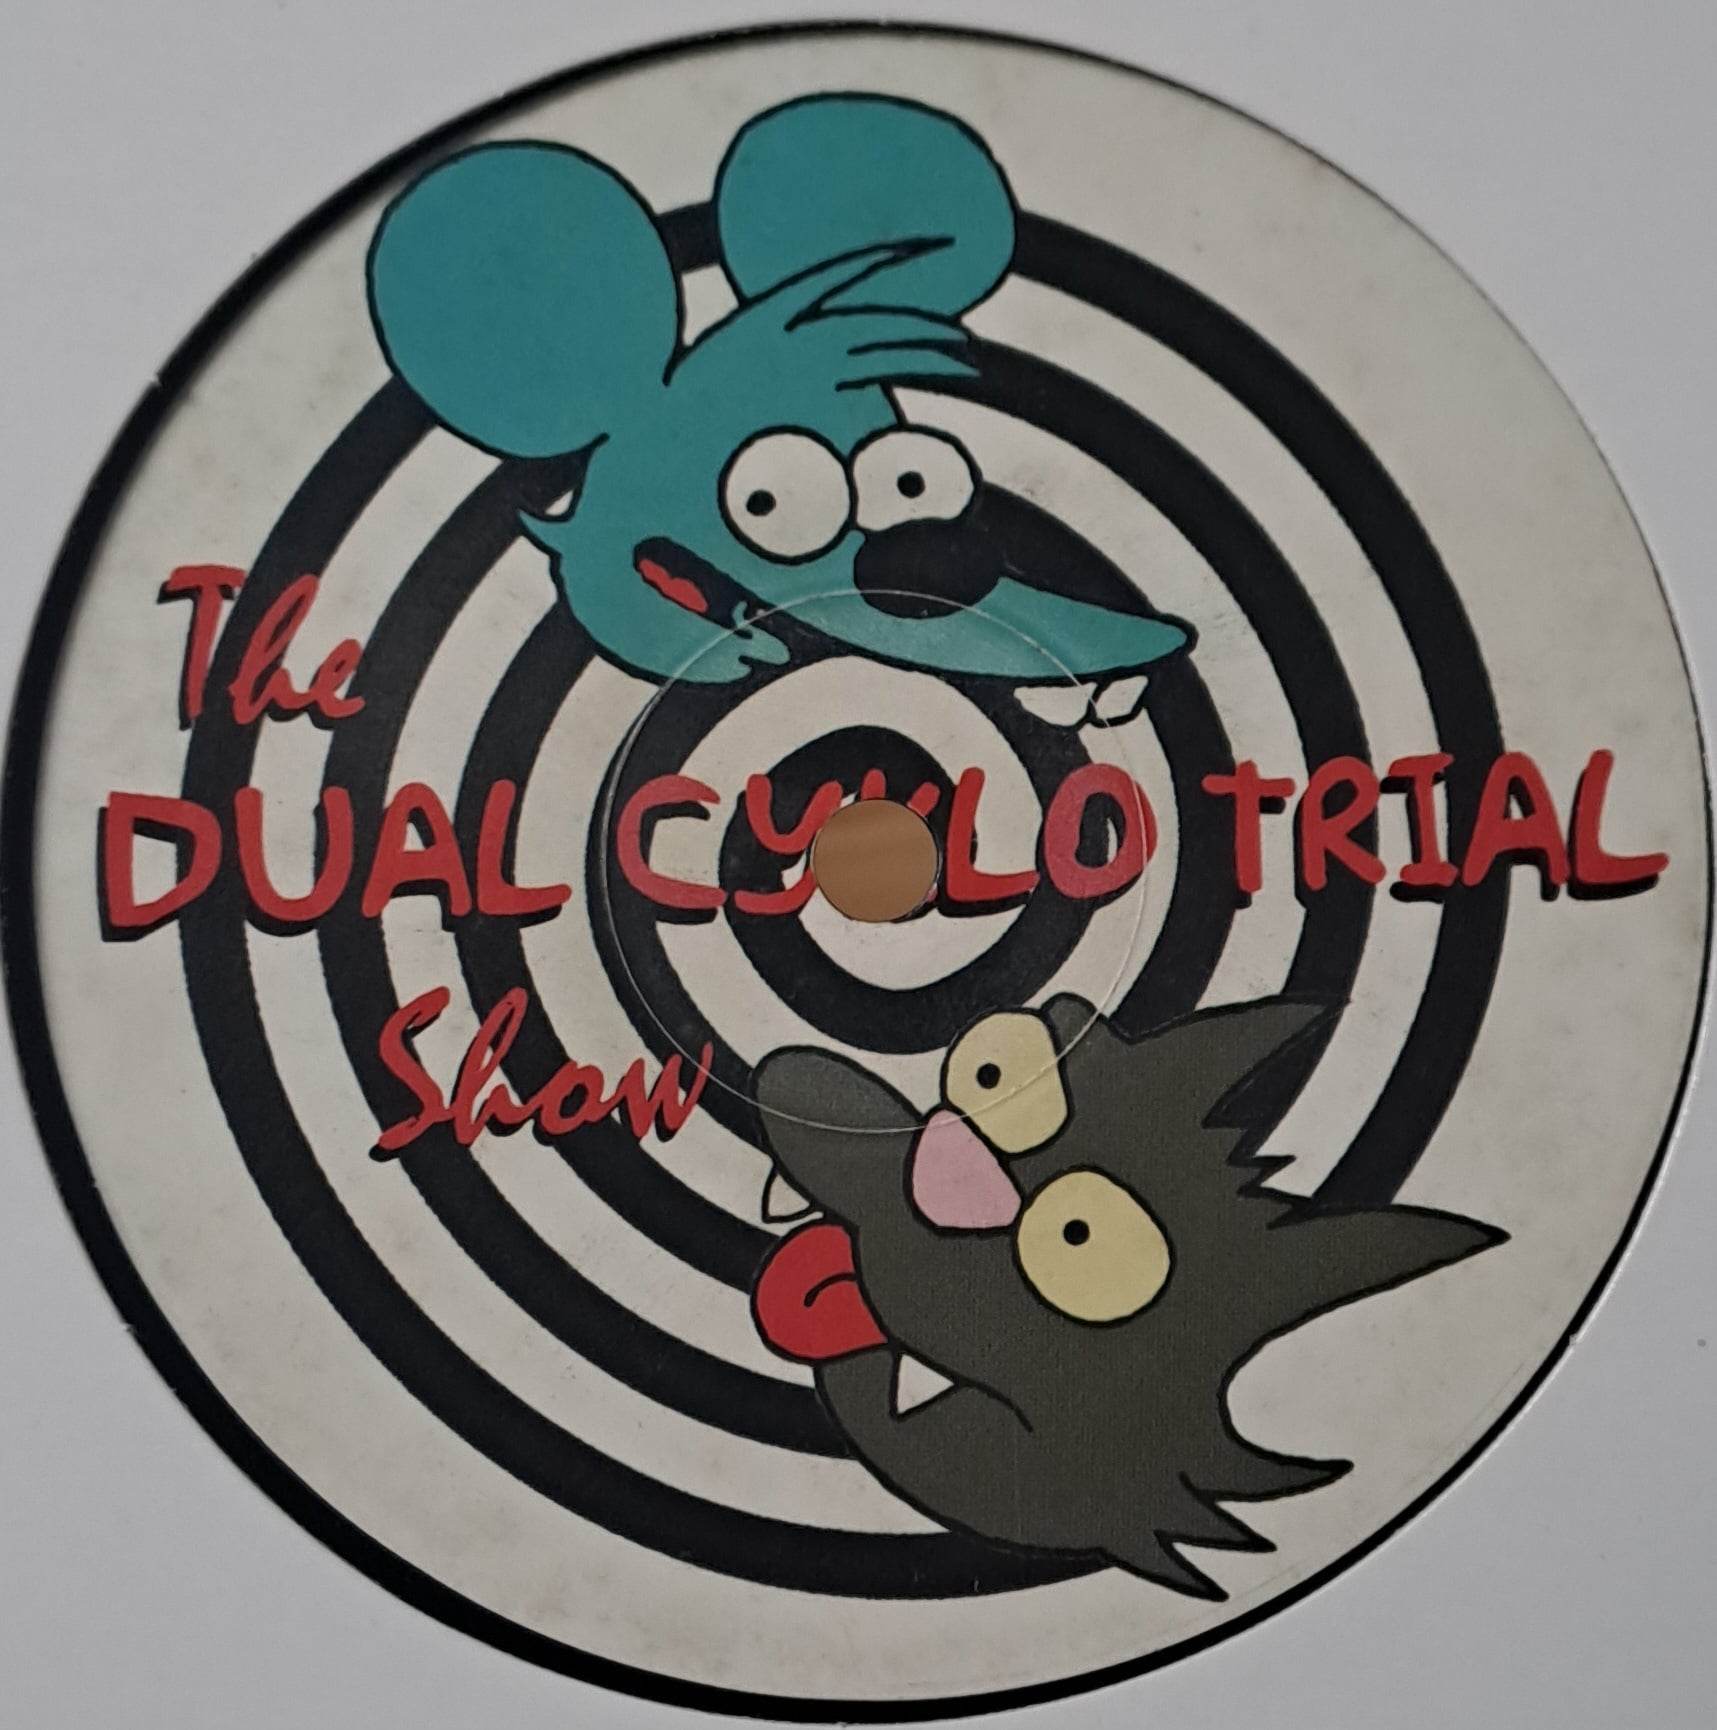 Dual Cyklo Trial 07 - vinyle freetekno